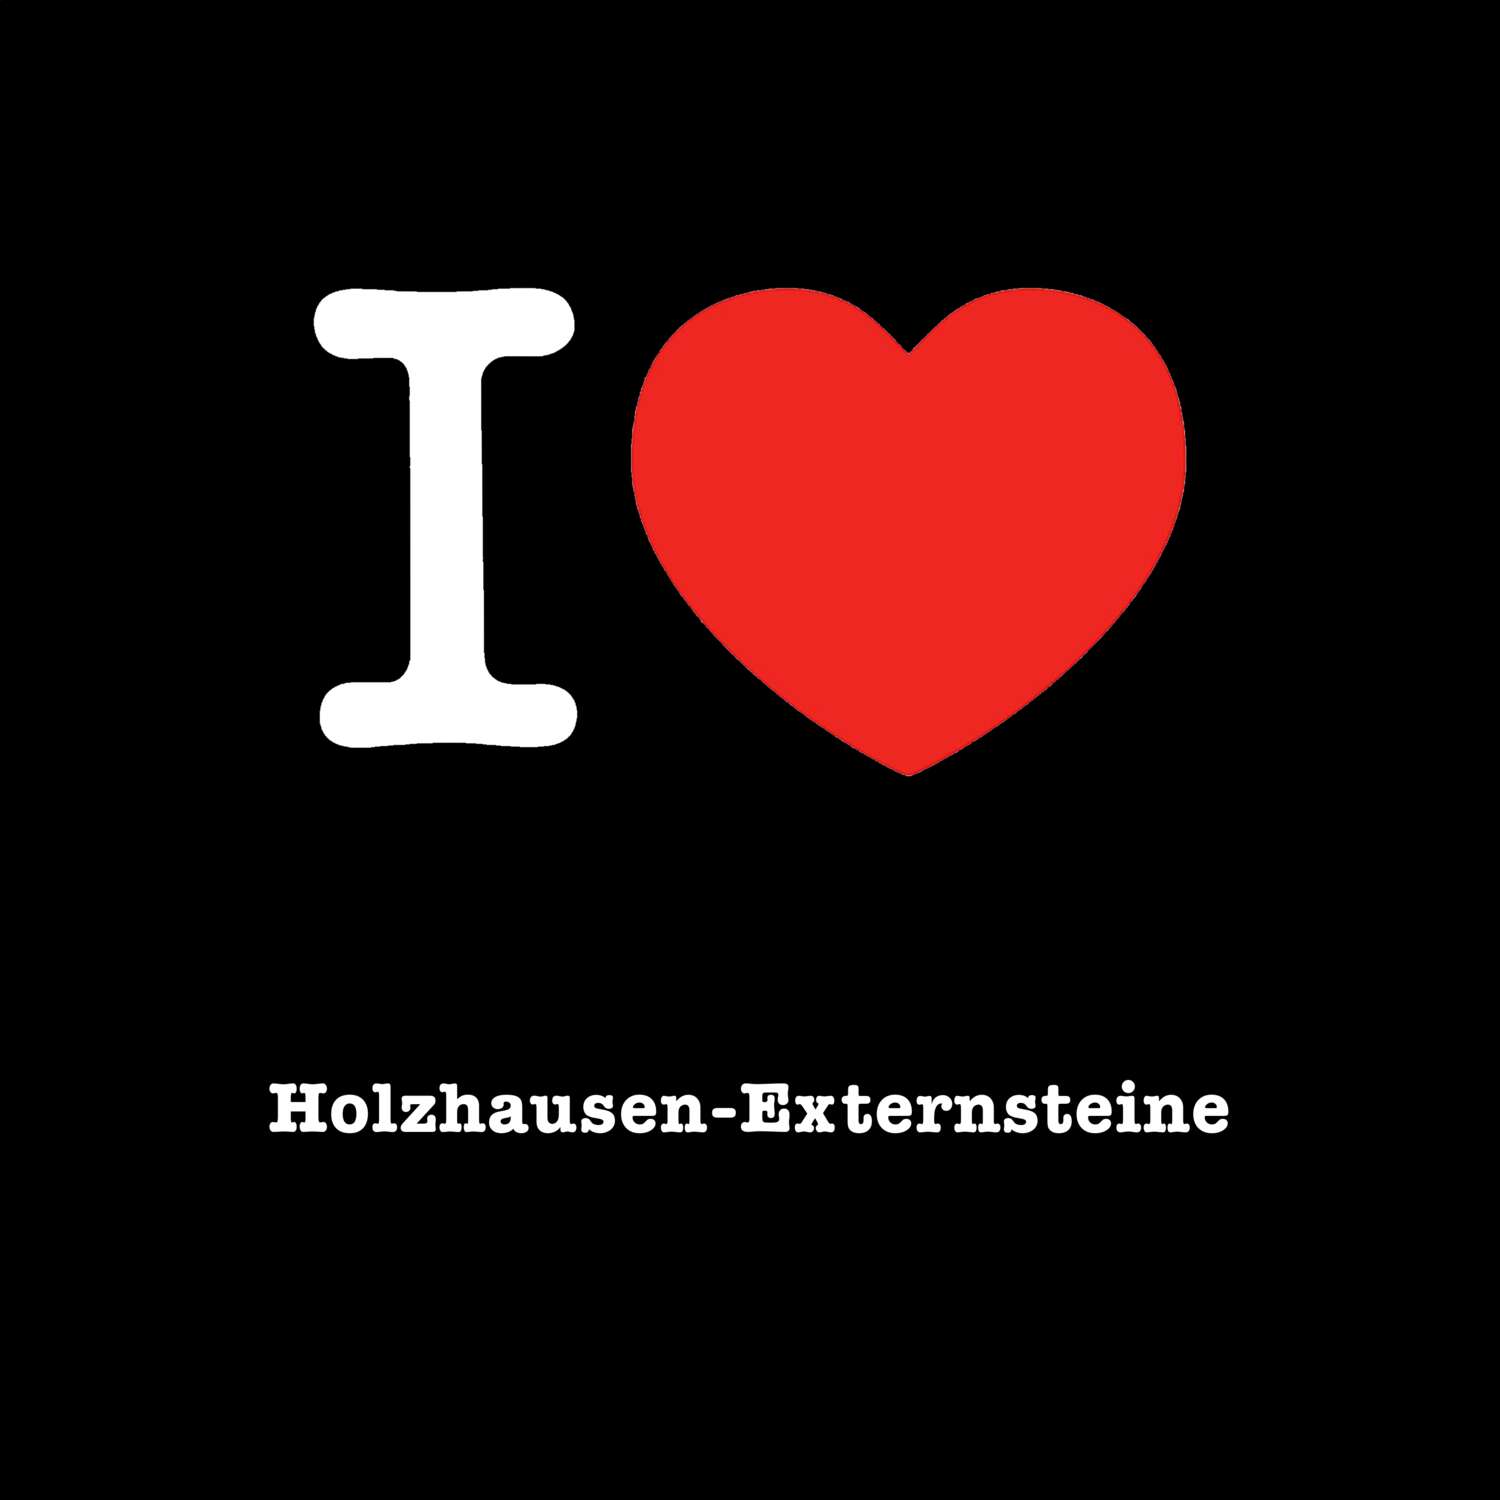 Holzhausen-Externsteine T-Shirt »I love«